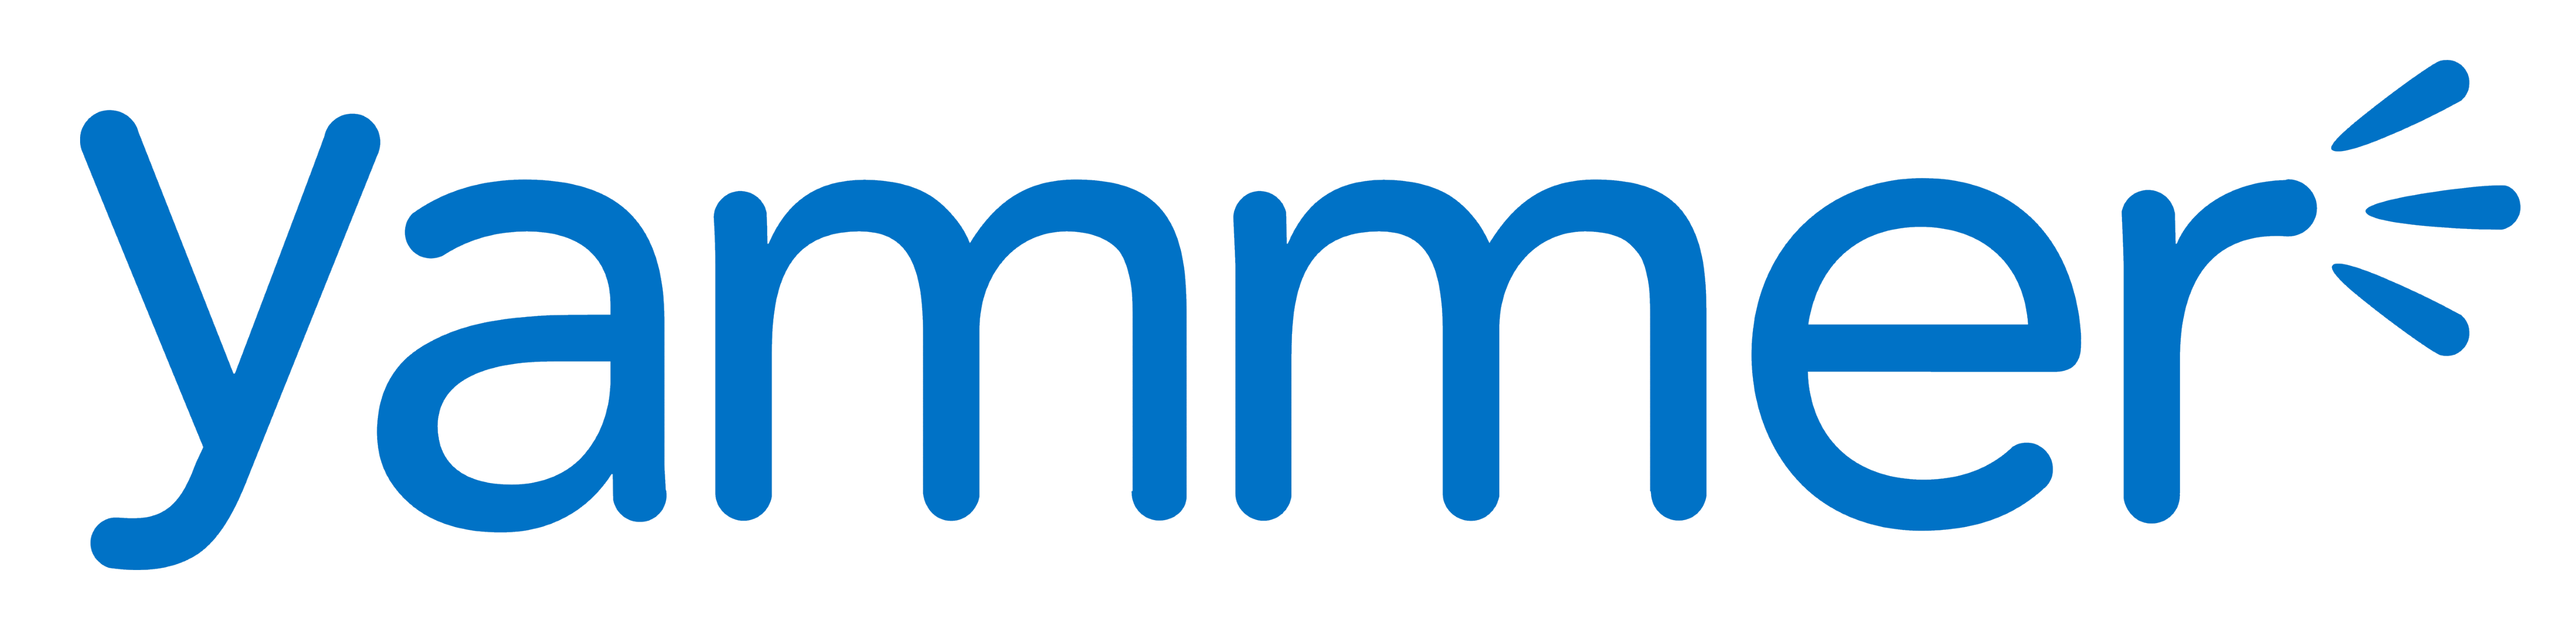 Microsoft Yammer - корпоративное социальное программное обеспечение